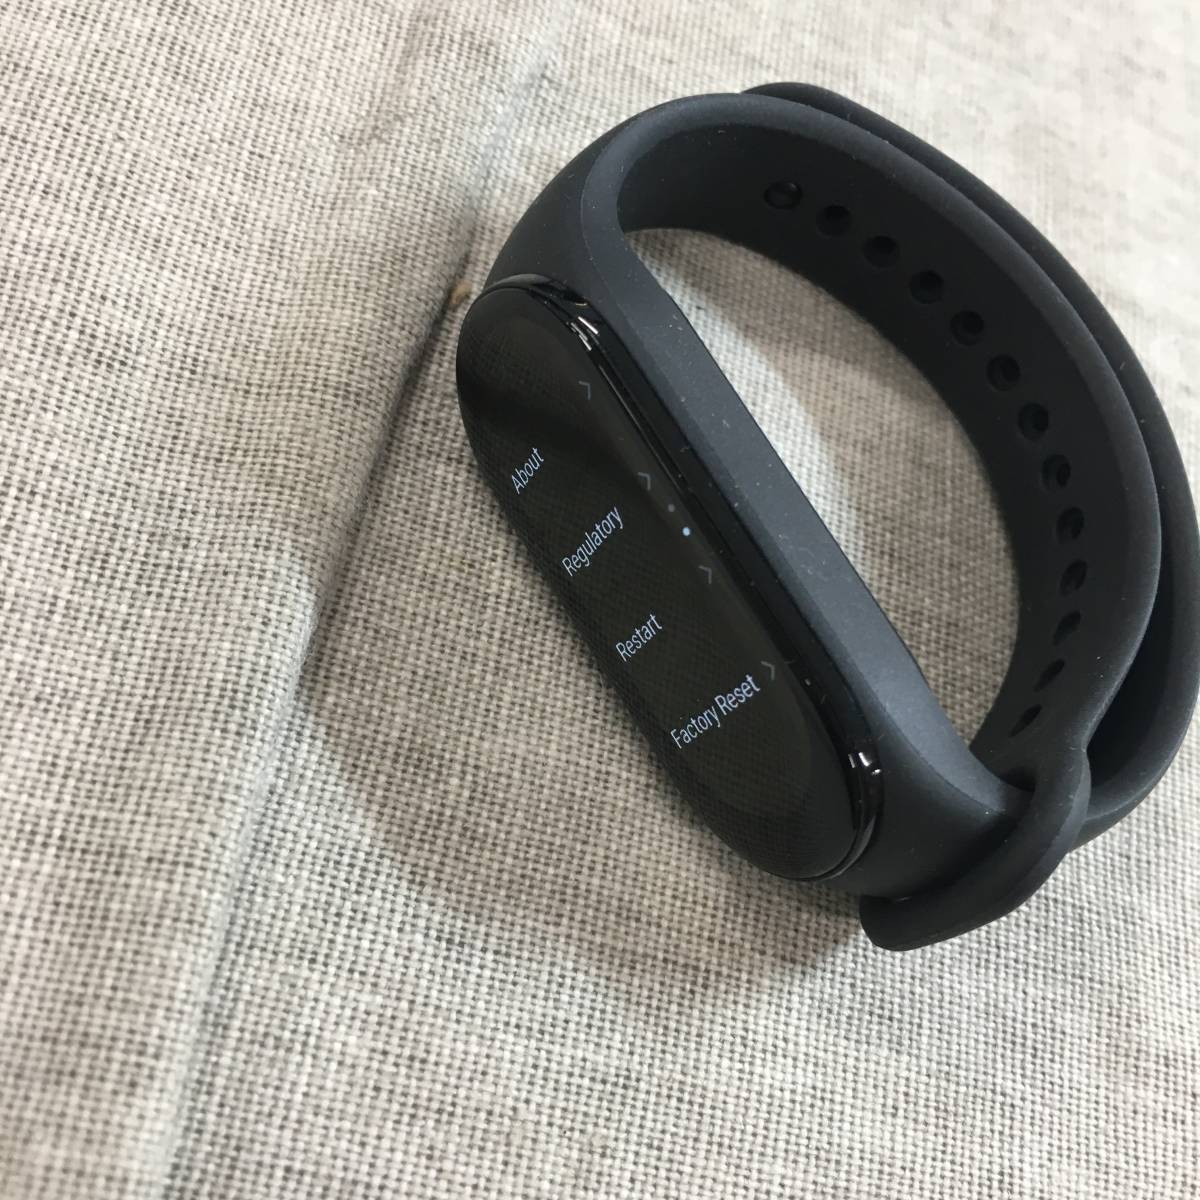  текущее состояние товар автомобиль omi(Xiaomi) смарт-часы Smart Band 7 Smart частота 7 выпуск на японском языке 1.62 дюймовый иметь машина EL дисплей AOD соответствует 